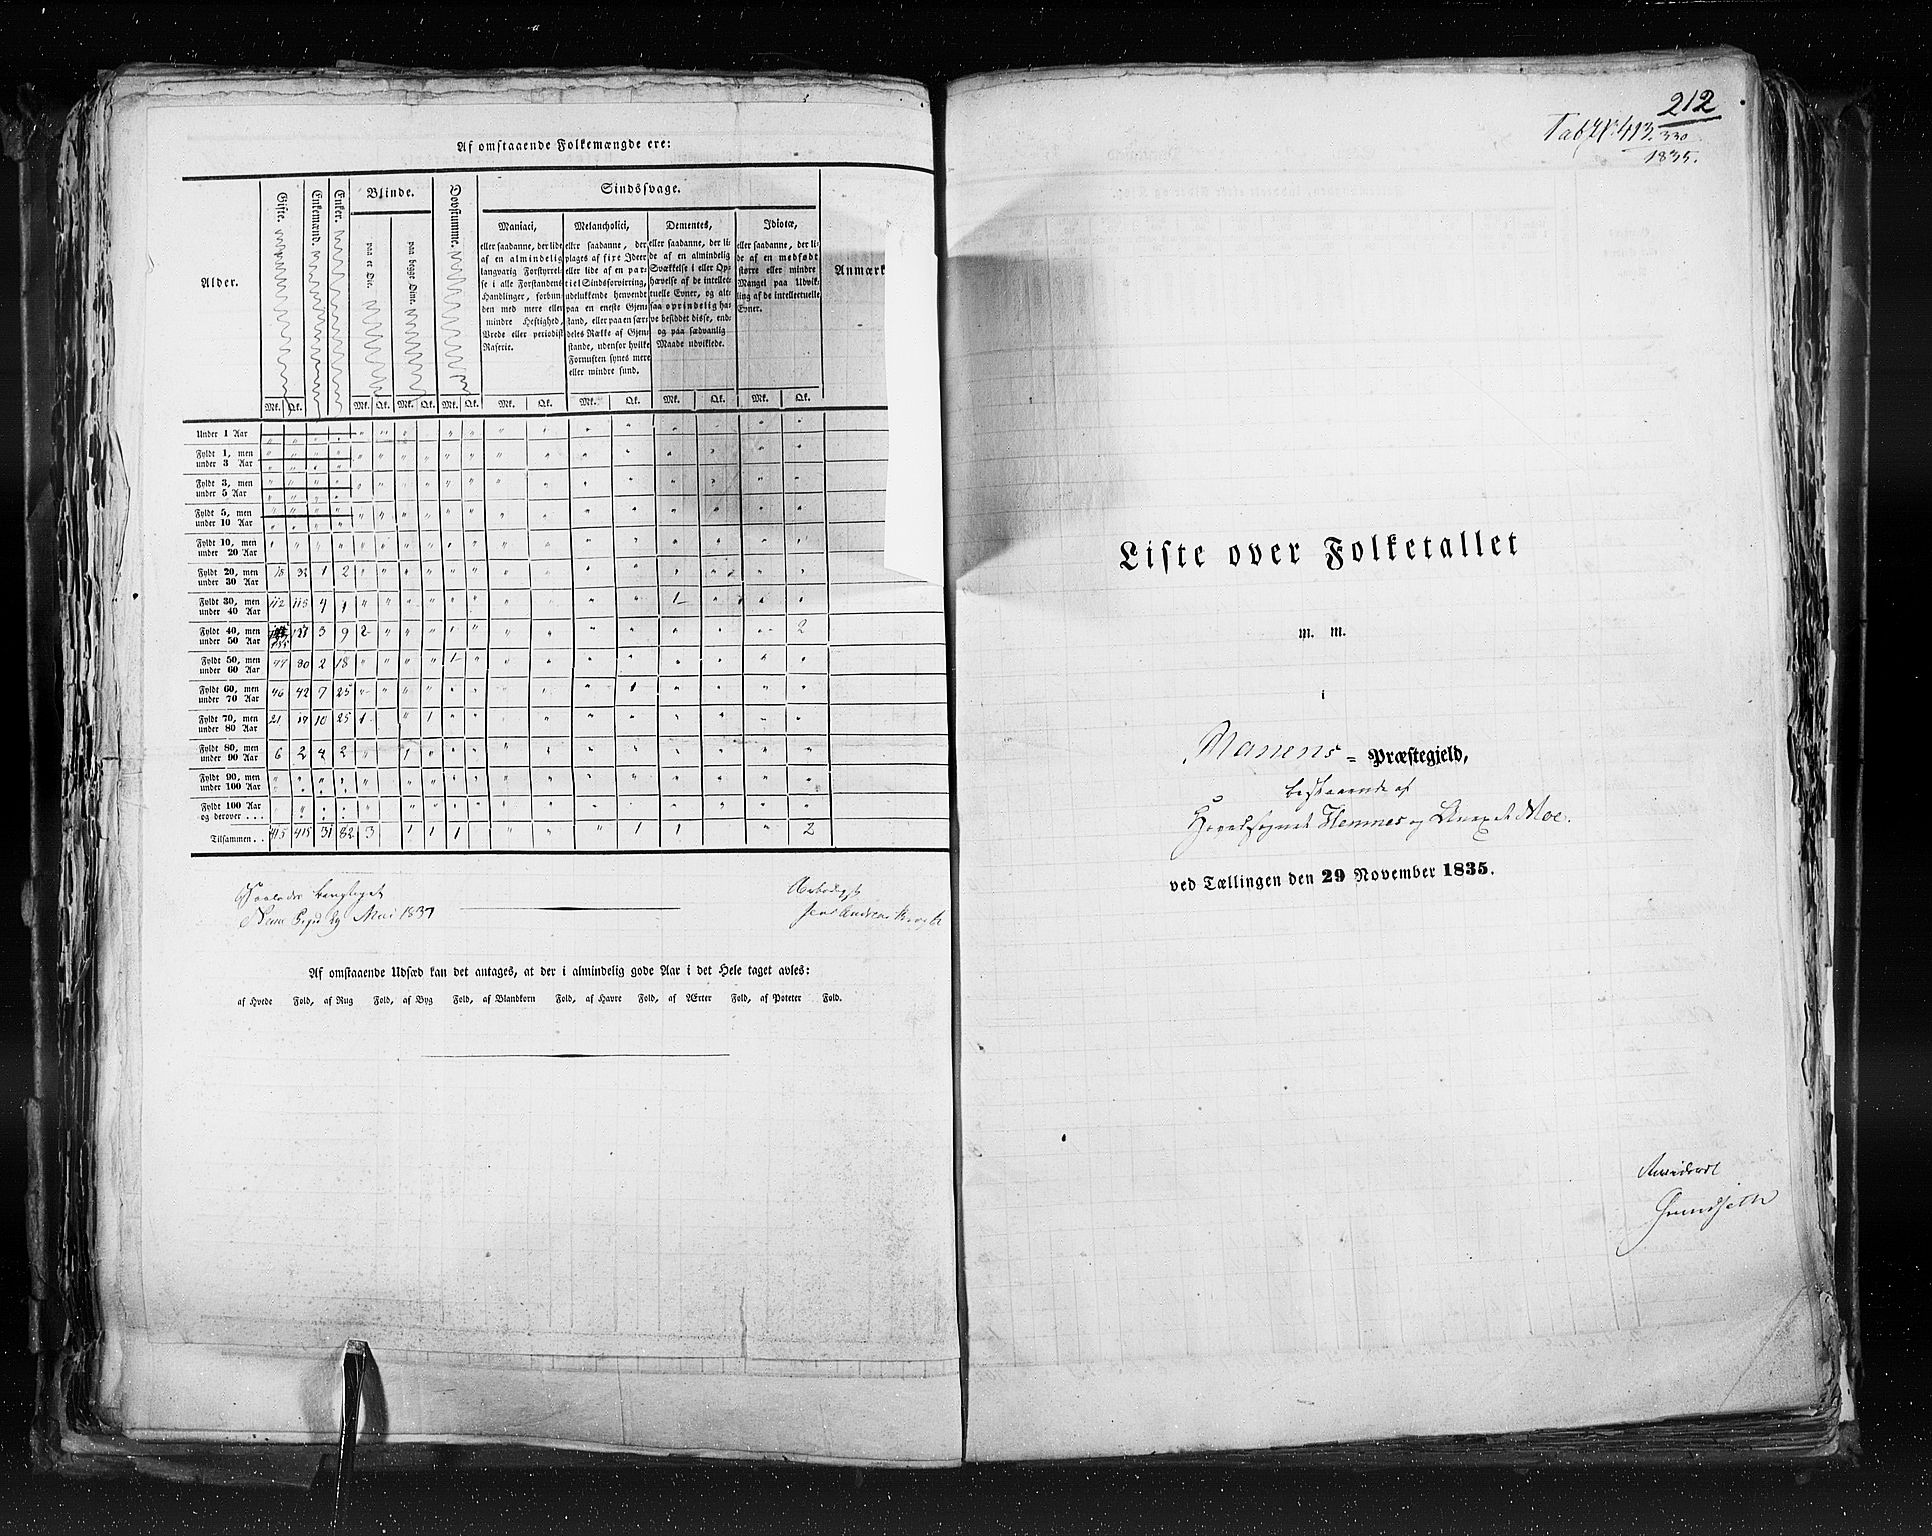 RA, Census 1835, vol. 9: Nordre Trondhjem amt, Nordland amt og Finnmarken amt, 1835, p. 212